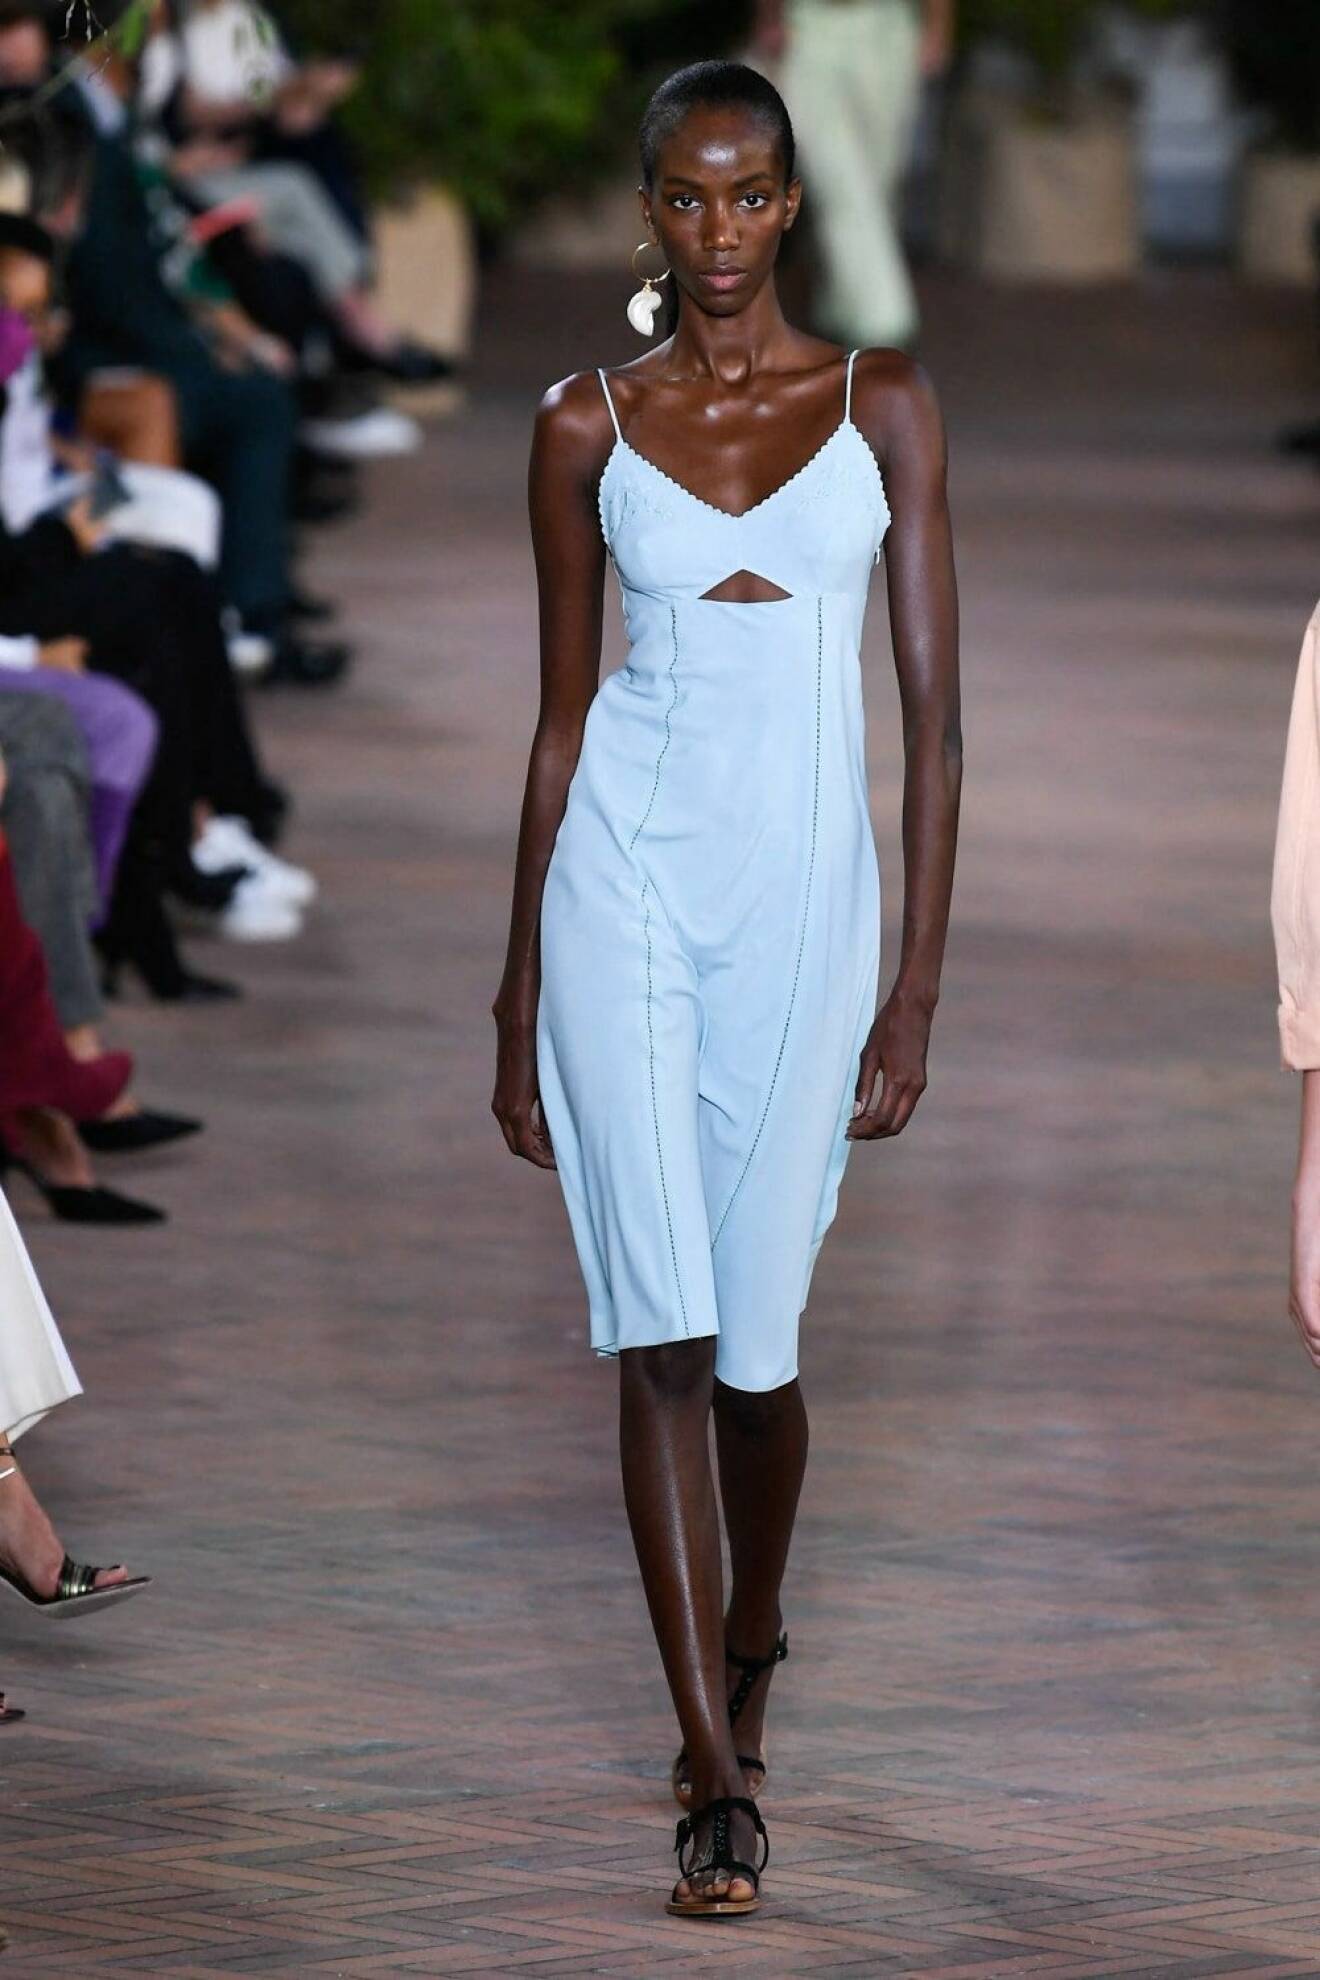 Modell med ljusblå, midiklänning i minimalistisk design. Klänningen har en trekantig cut out-detalj under bystet. Look Alberta Ferretti.